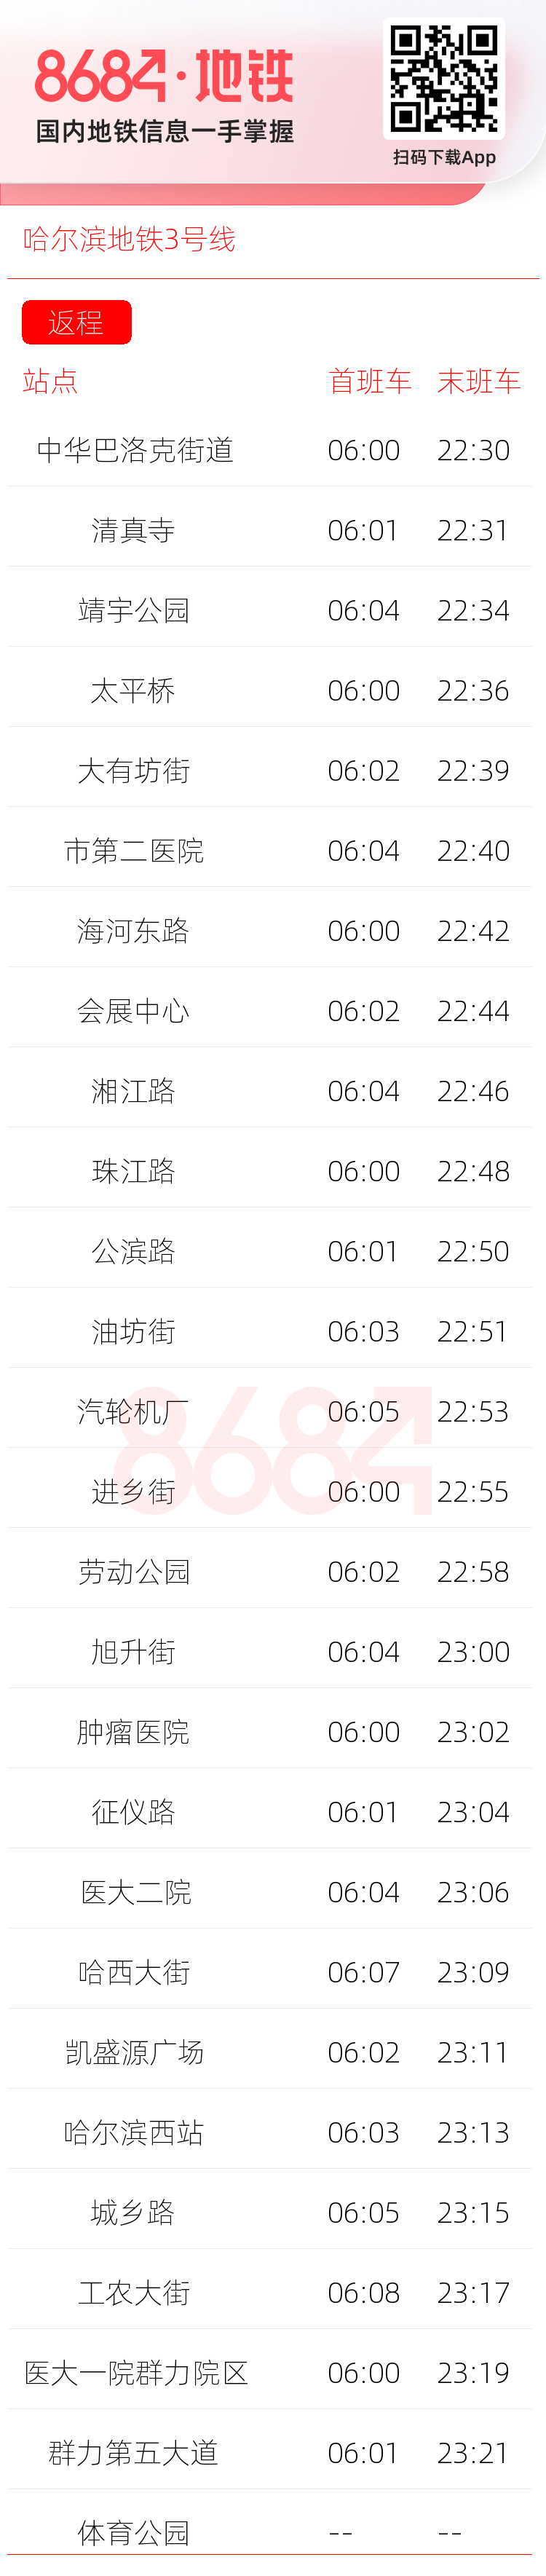 哈尔滨地铁3号线运营时间表